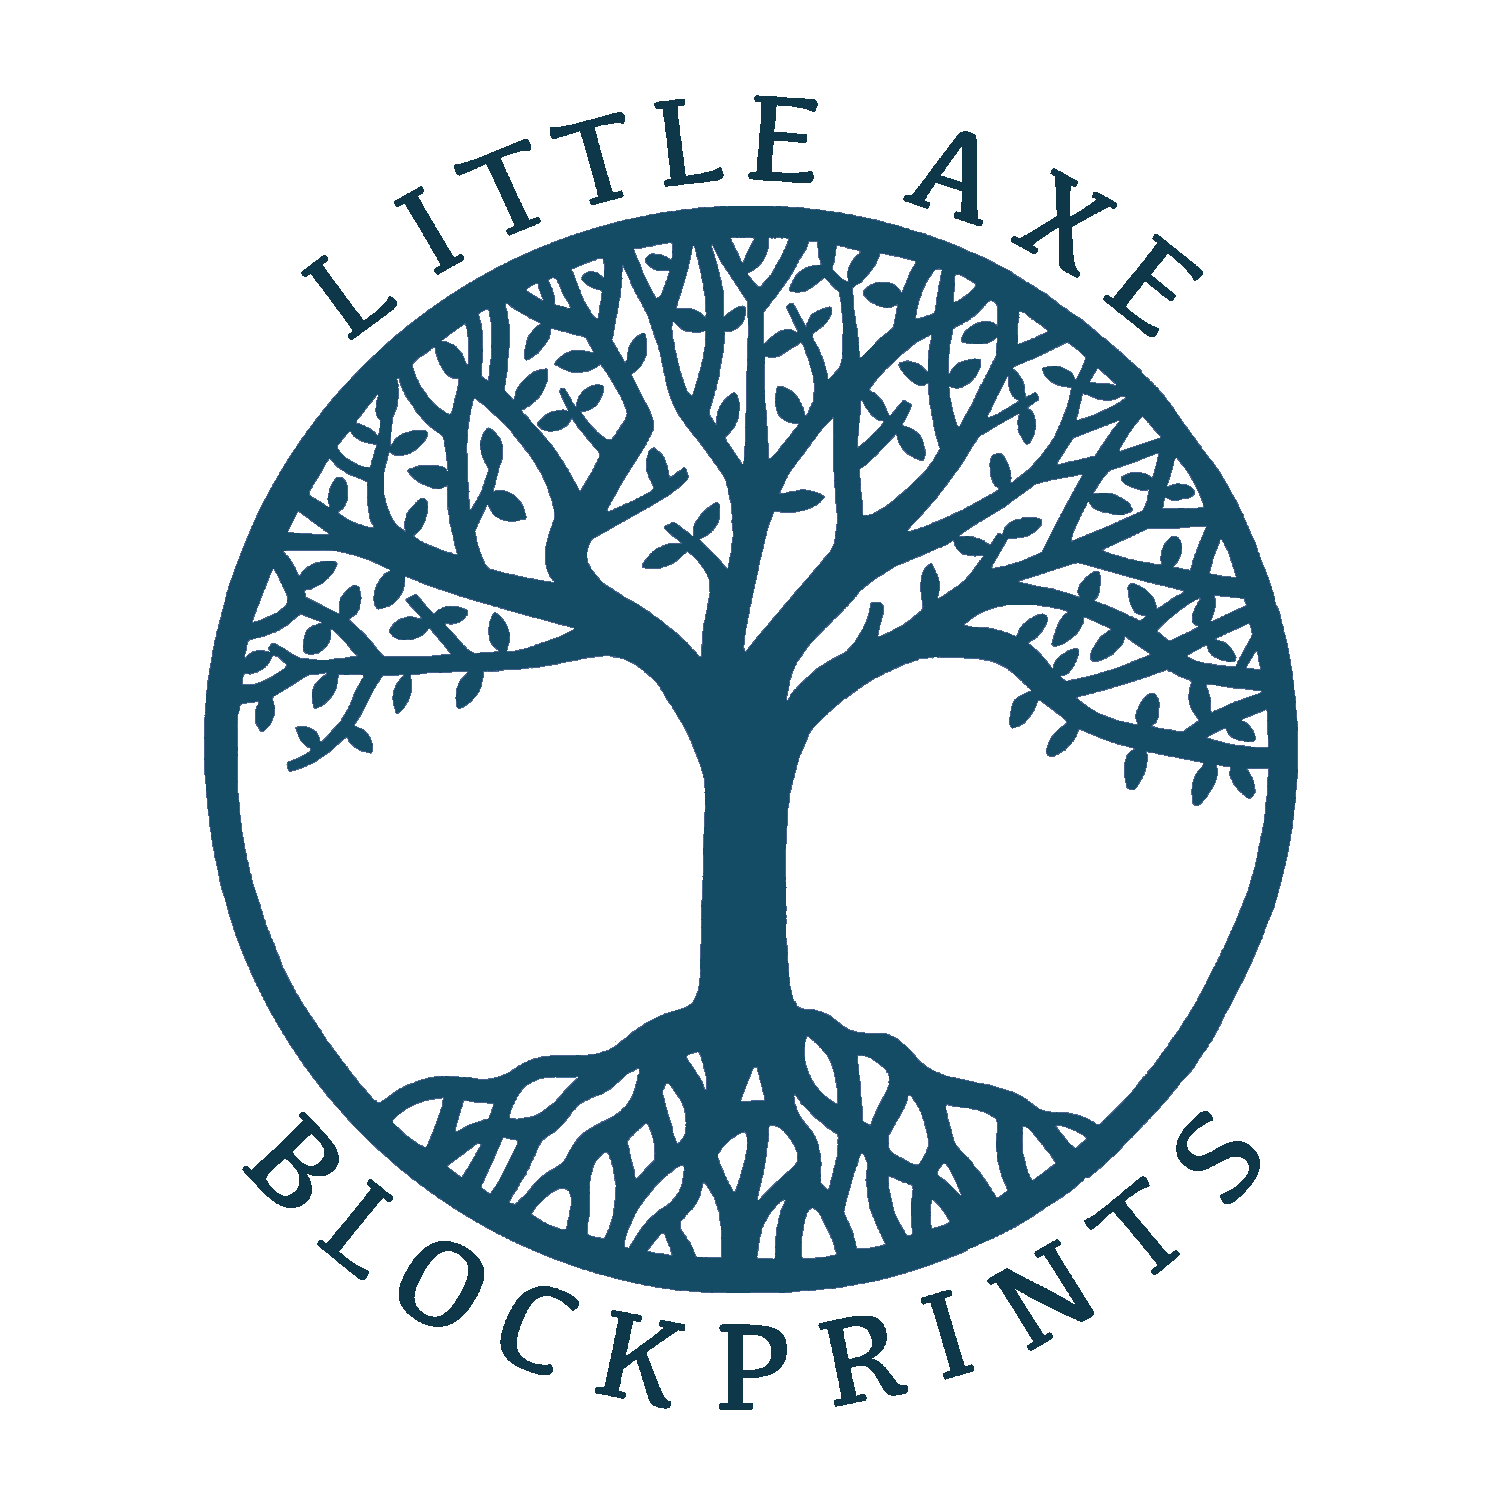 Little Axe Blockprints